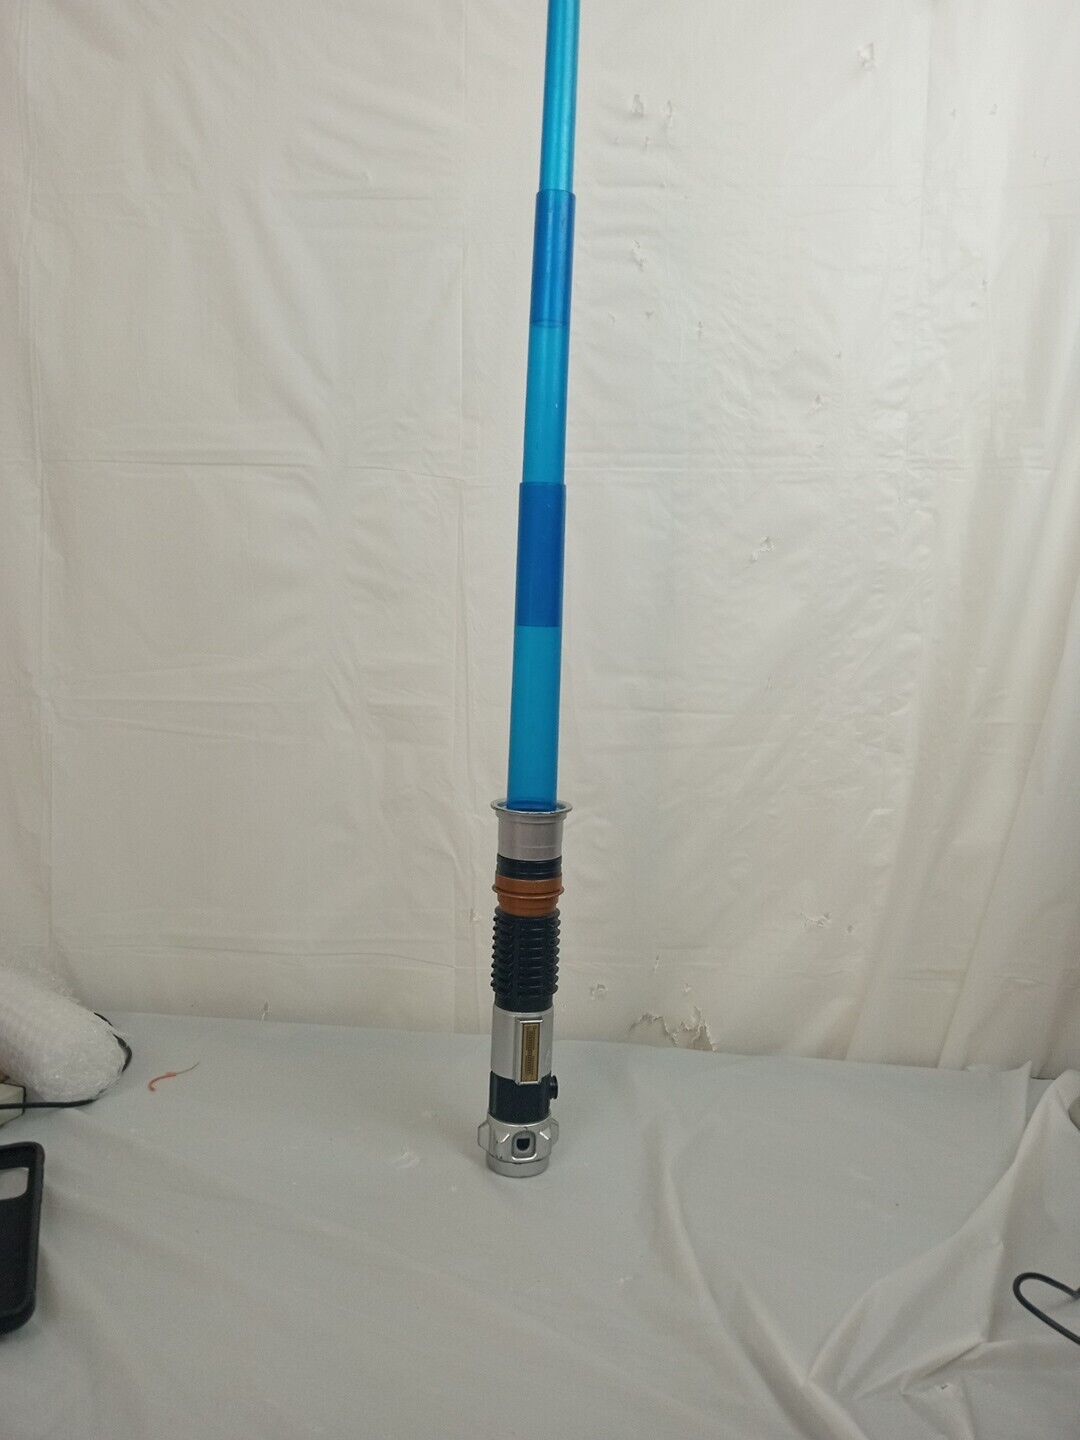 2015 Hasbro Blue Star Wars Lightsaber Works